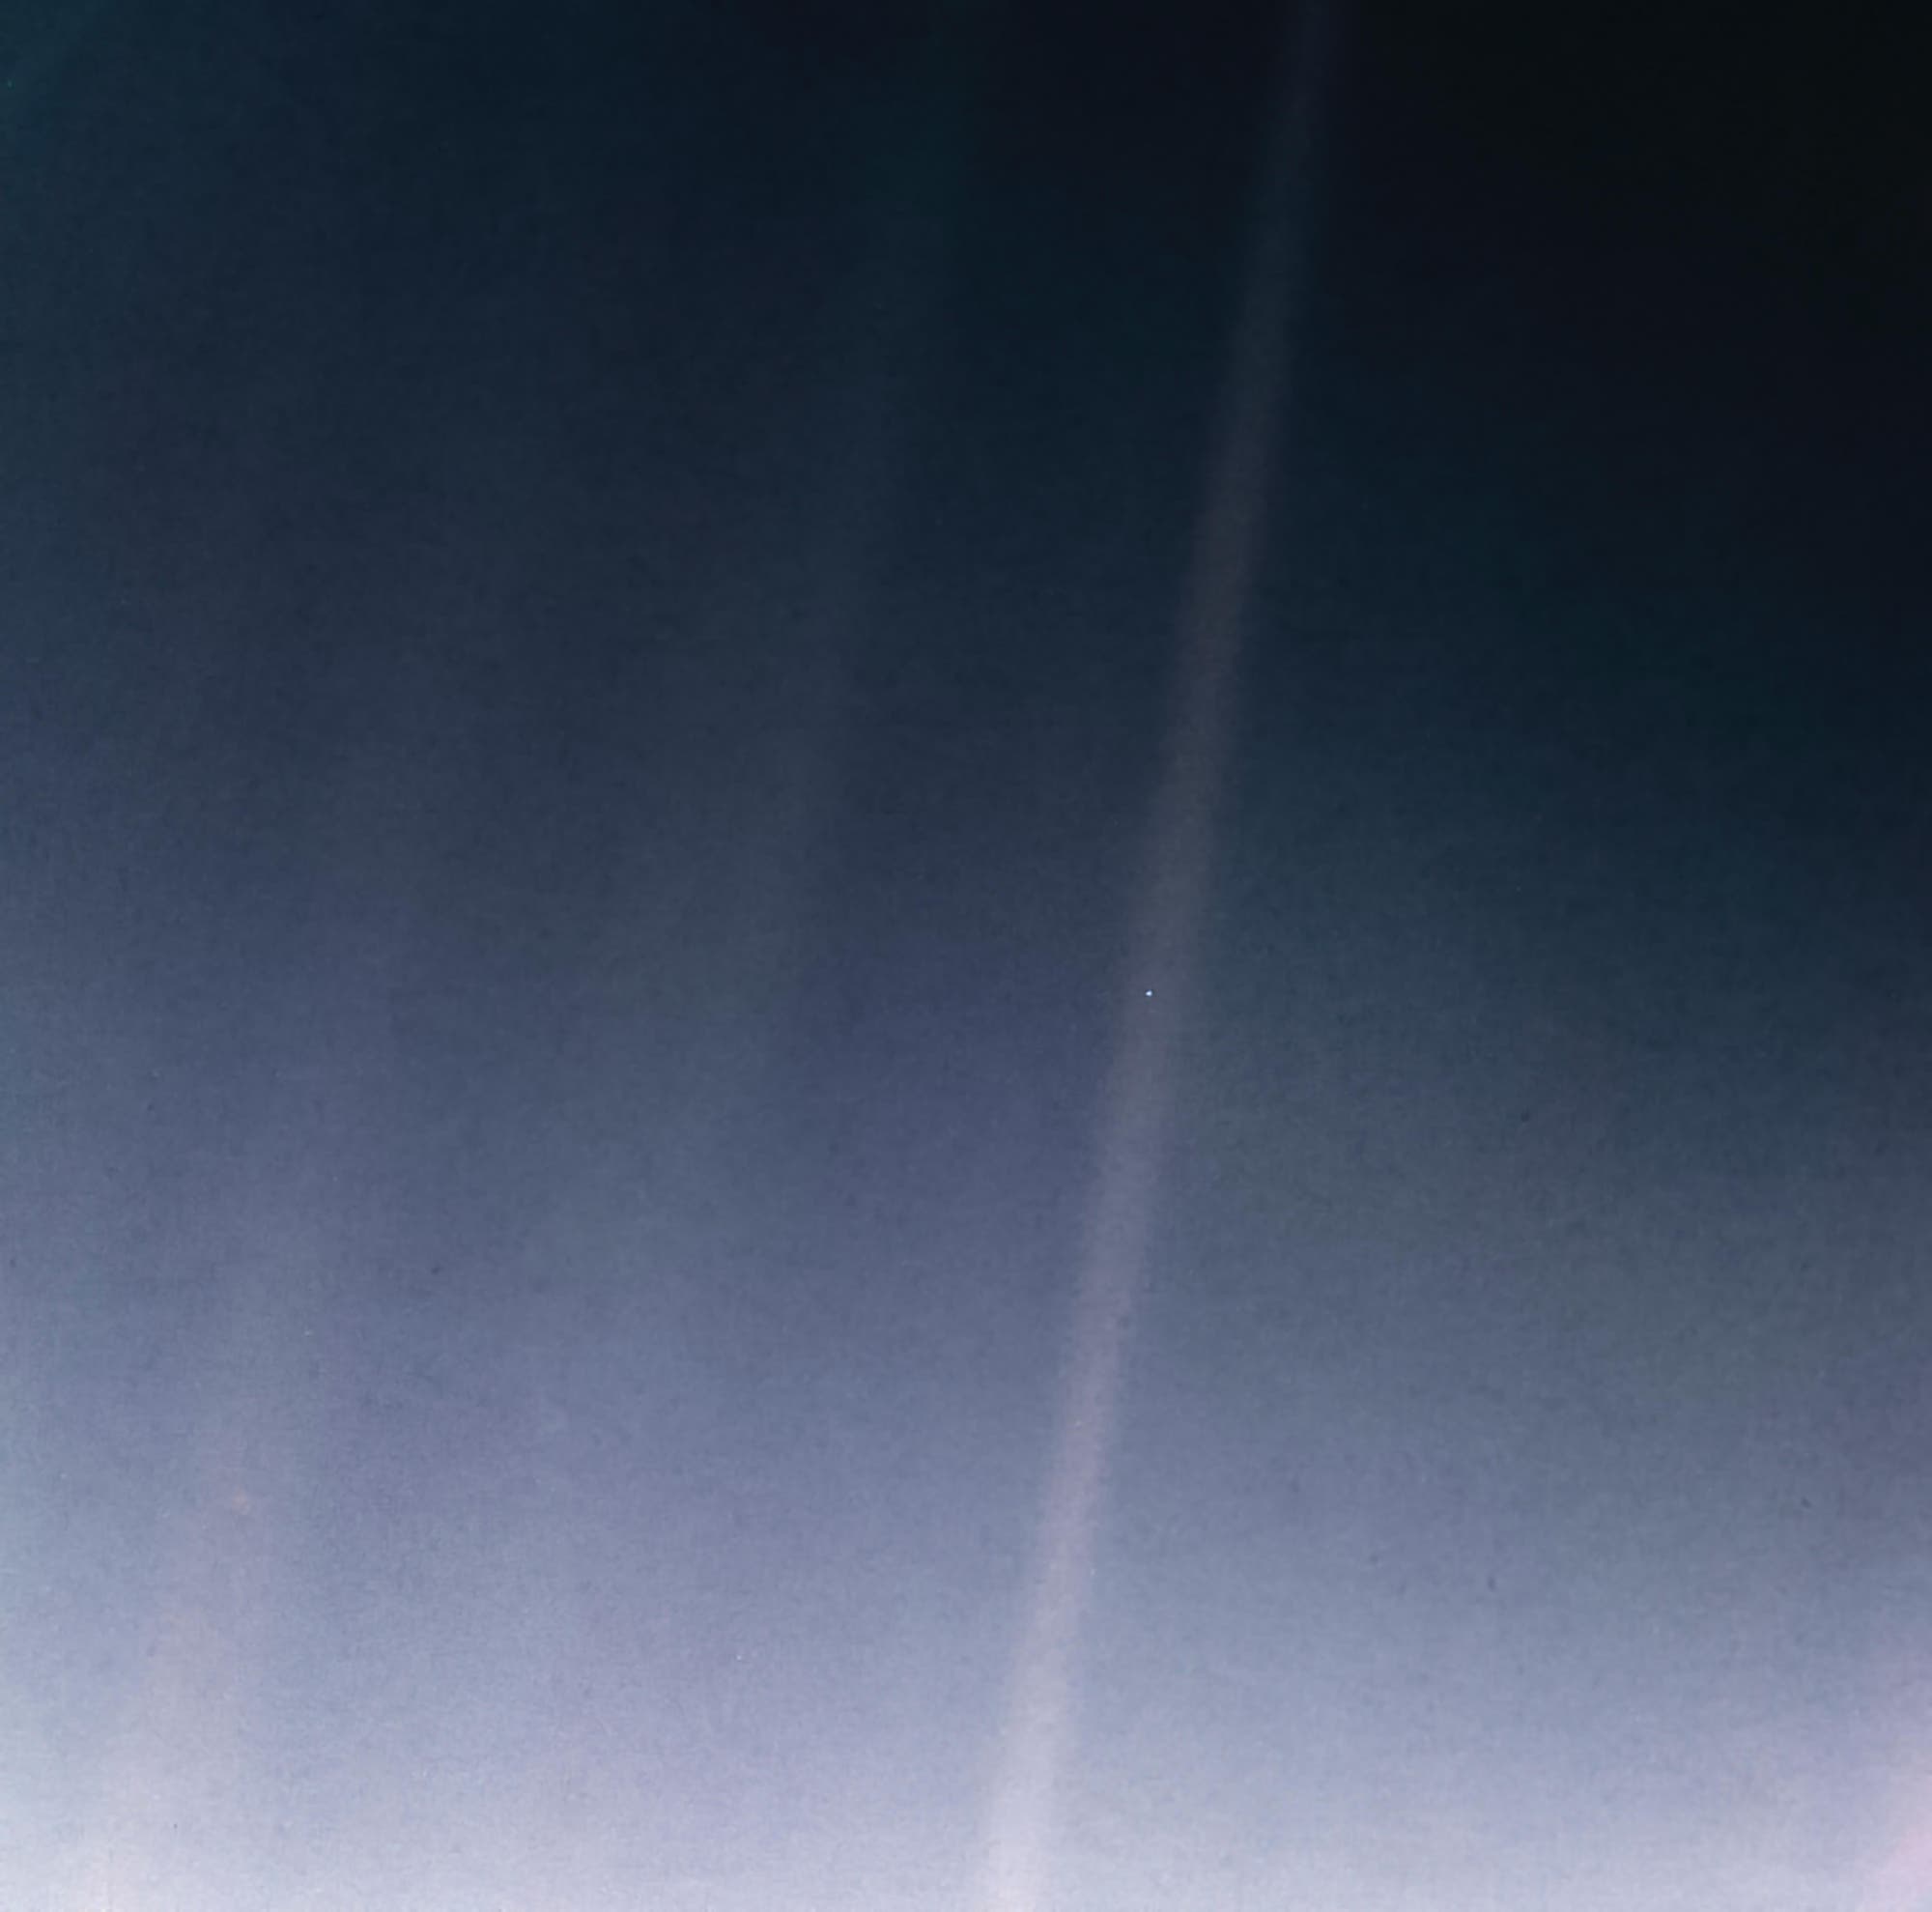 Unsere Erde aus Sicht von Voyager 1 als Pale Blue Dot